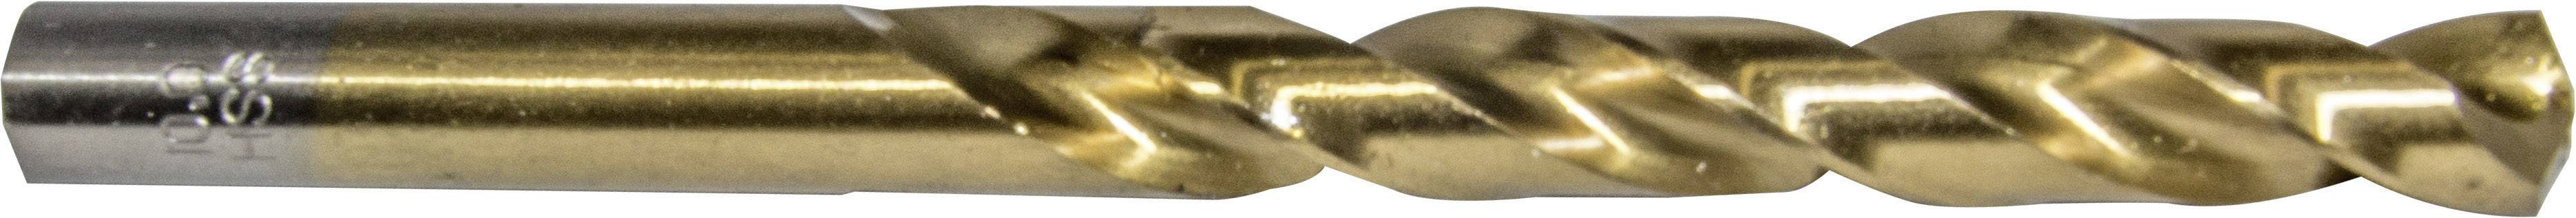 HELLER 29268 9 Metall-Spiralbohrer 1 Stück 7 mm Gesamtlänge 109 mm 1 St.